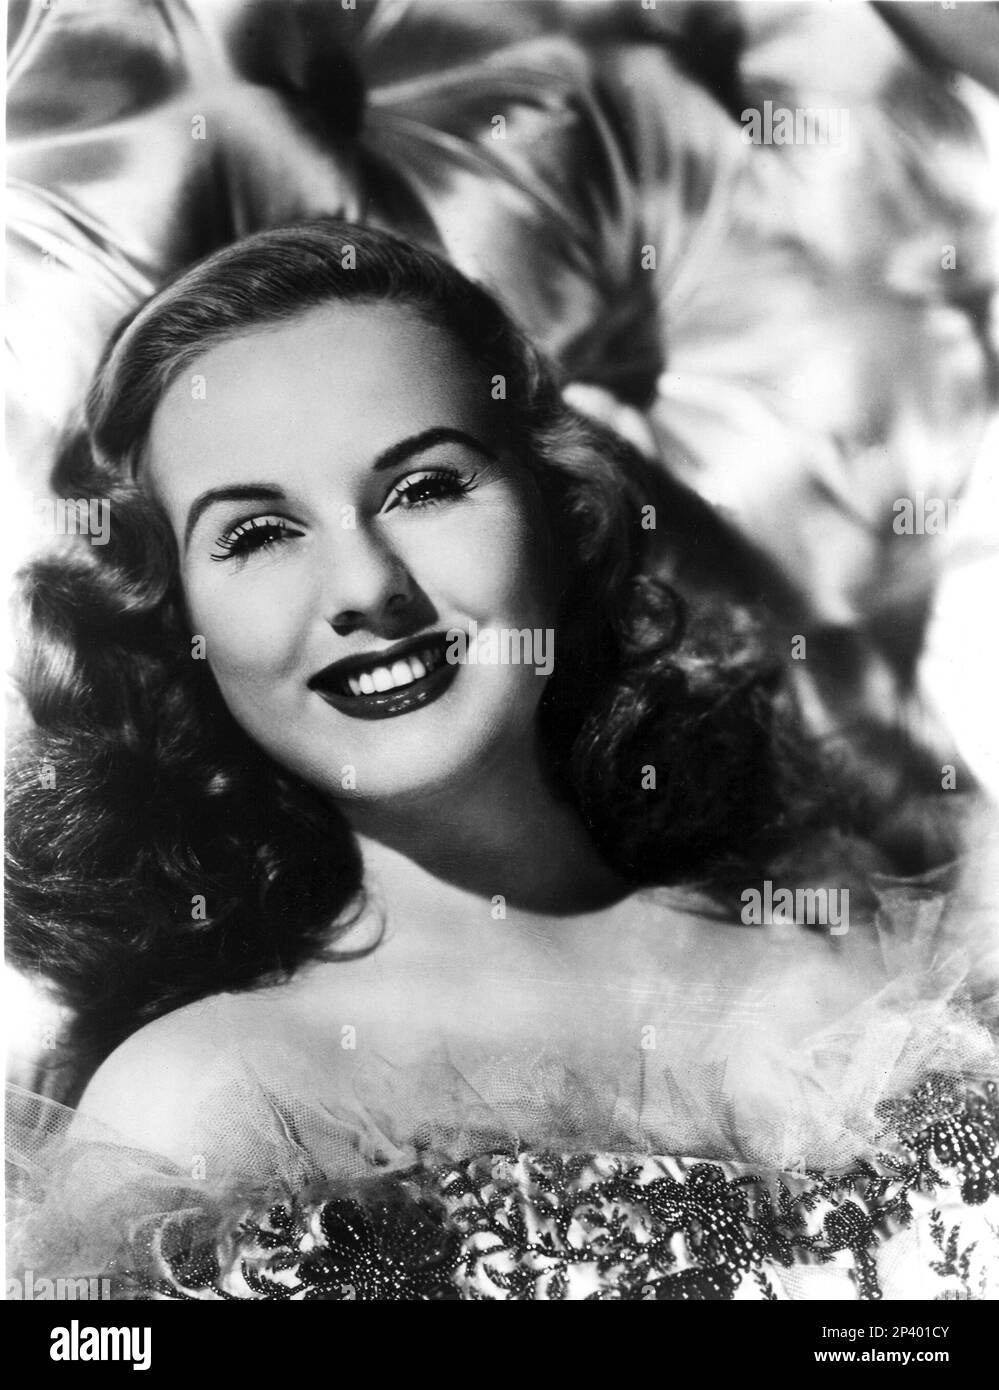 1940 ca. : The canadian singer and movie actress DEANNA DURBIN ( born in Winnipeg , Manitoba , Canada 4 december 1921 ) - CINEMA - portrait - ritratto - portrait - smile - sorriso  - DIVA - DIVINA - cantante - musical  ---- Archivio GBB Stock Photo